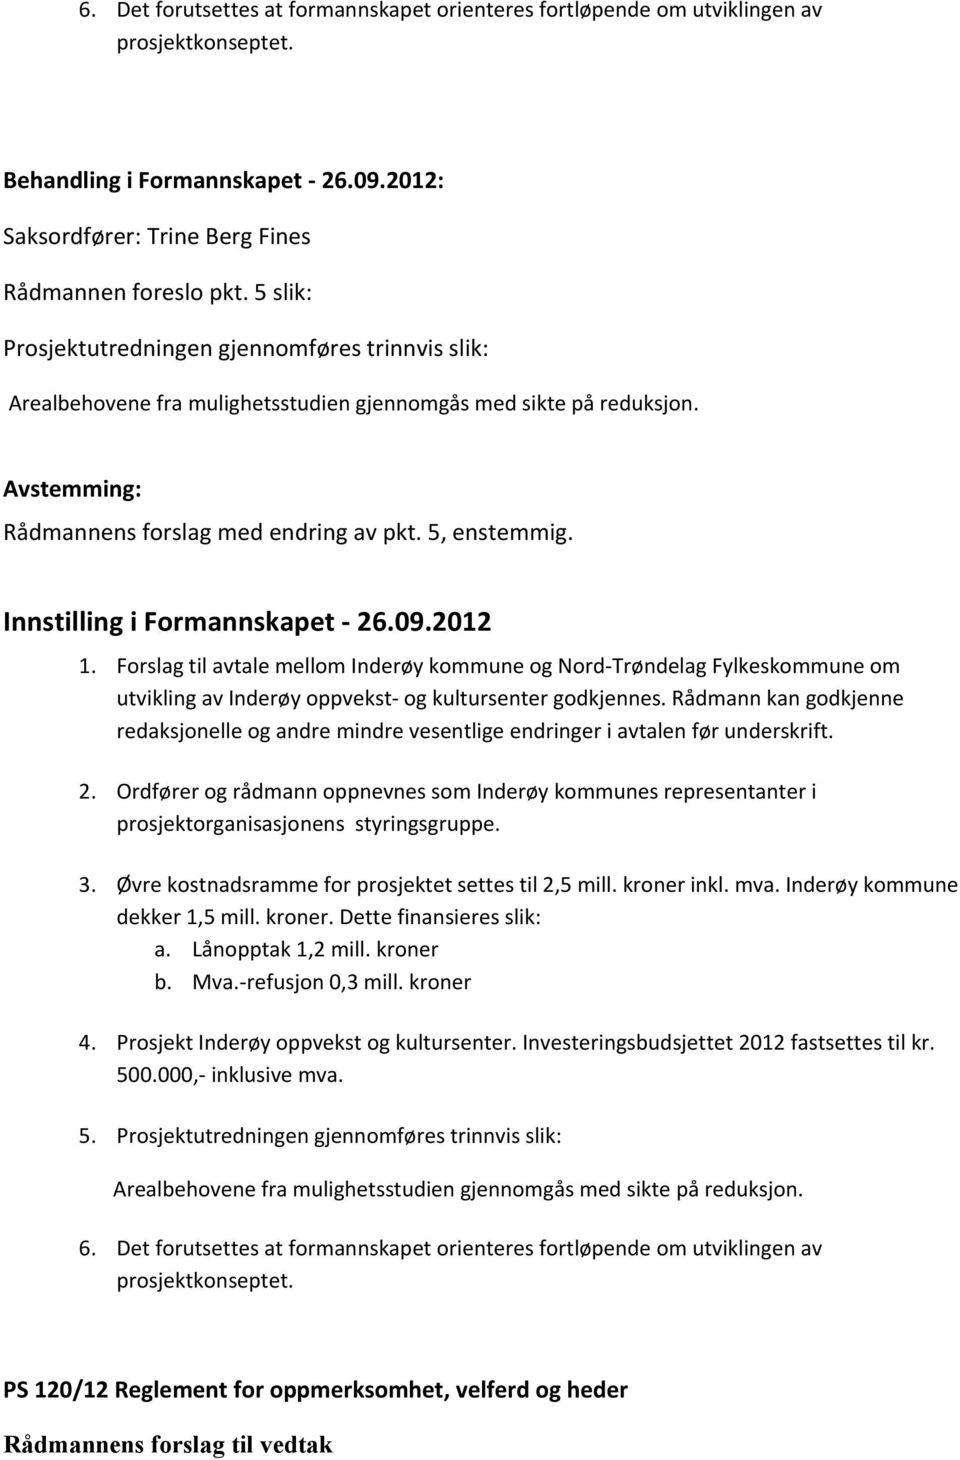 Innstilling i Formannskapet - 26.09.2012 1. Forslag til avtale mellom Inderøy kommune og Nord-Trøndelag Fylkeskommune om utvikling av Inderøy oppvekst- og kultursenter godkjennes.